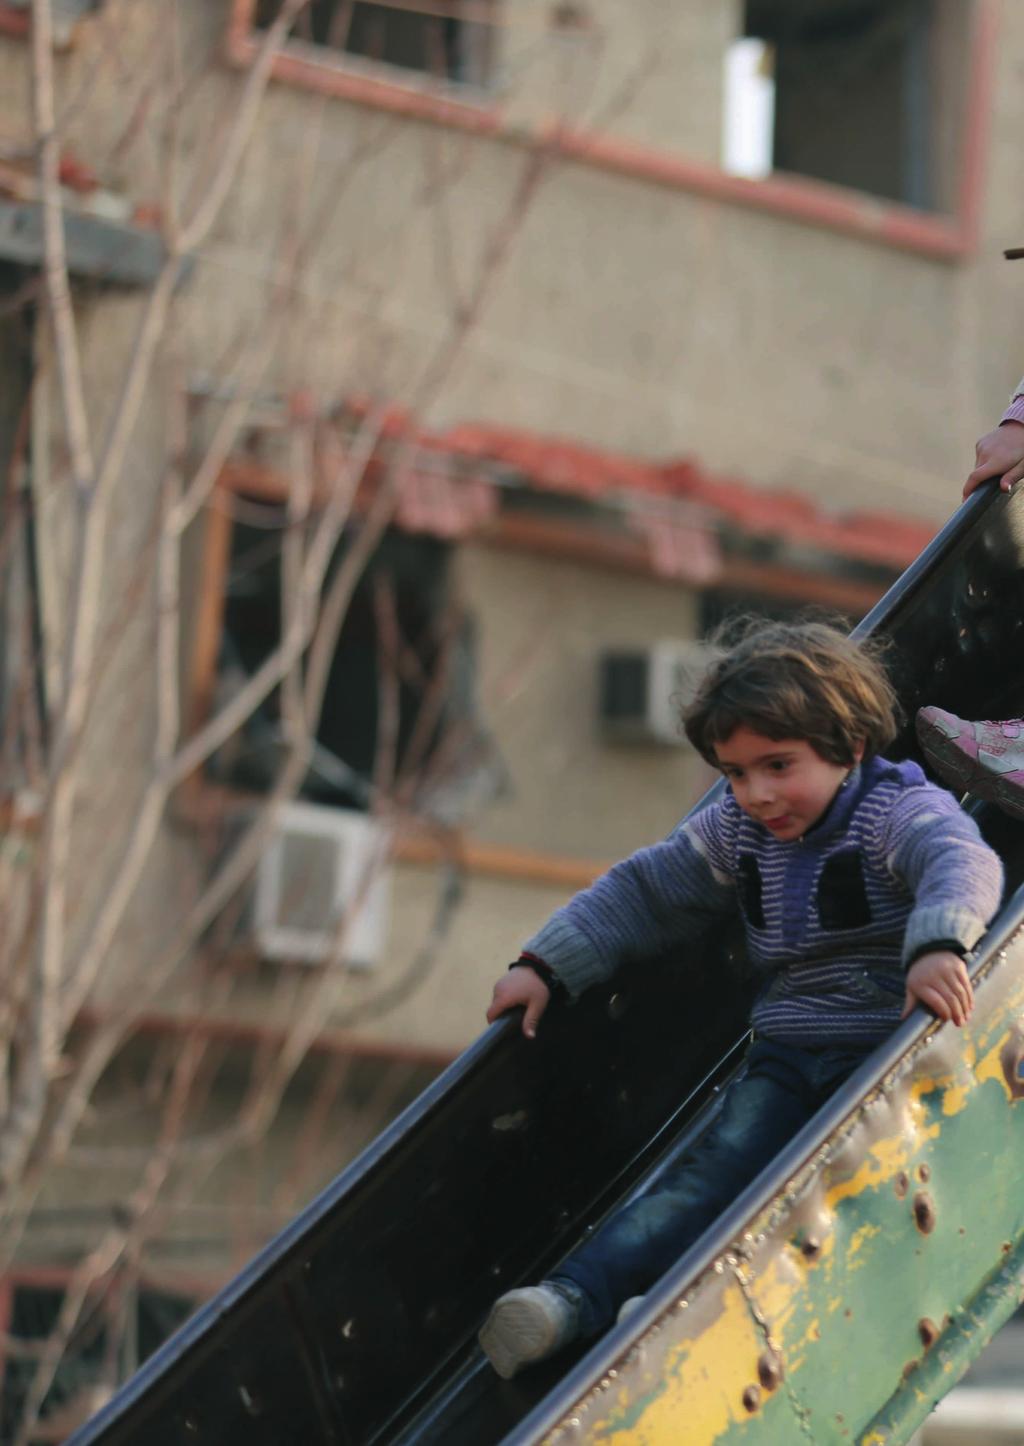 UNICEF, Suriyeli çocuklar adına çağrıda bulunmaktadır: Çatışmaya acilen siyasal çözüm bulunmalı.